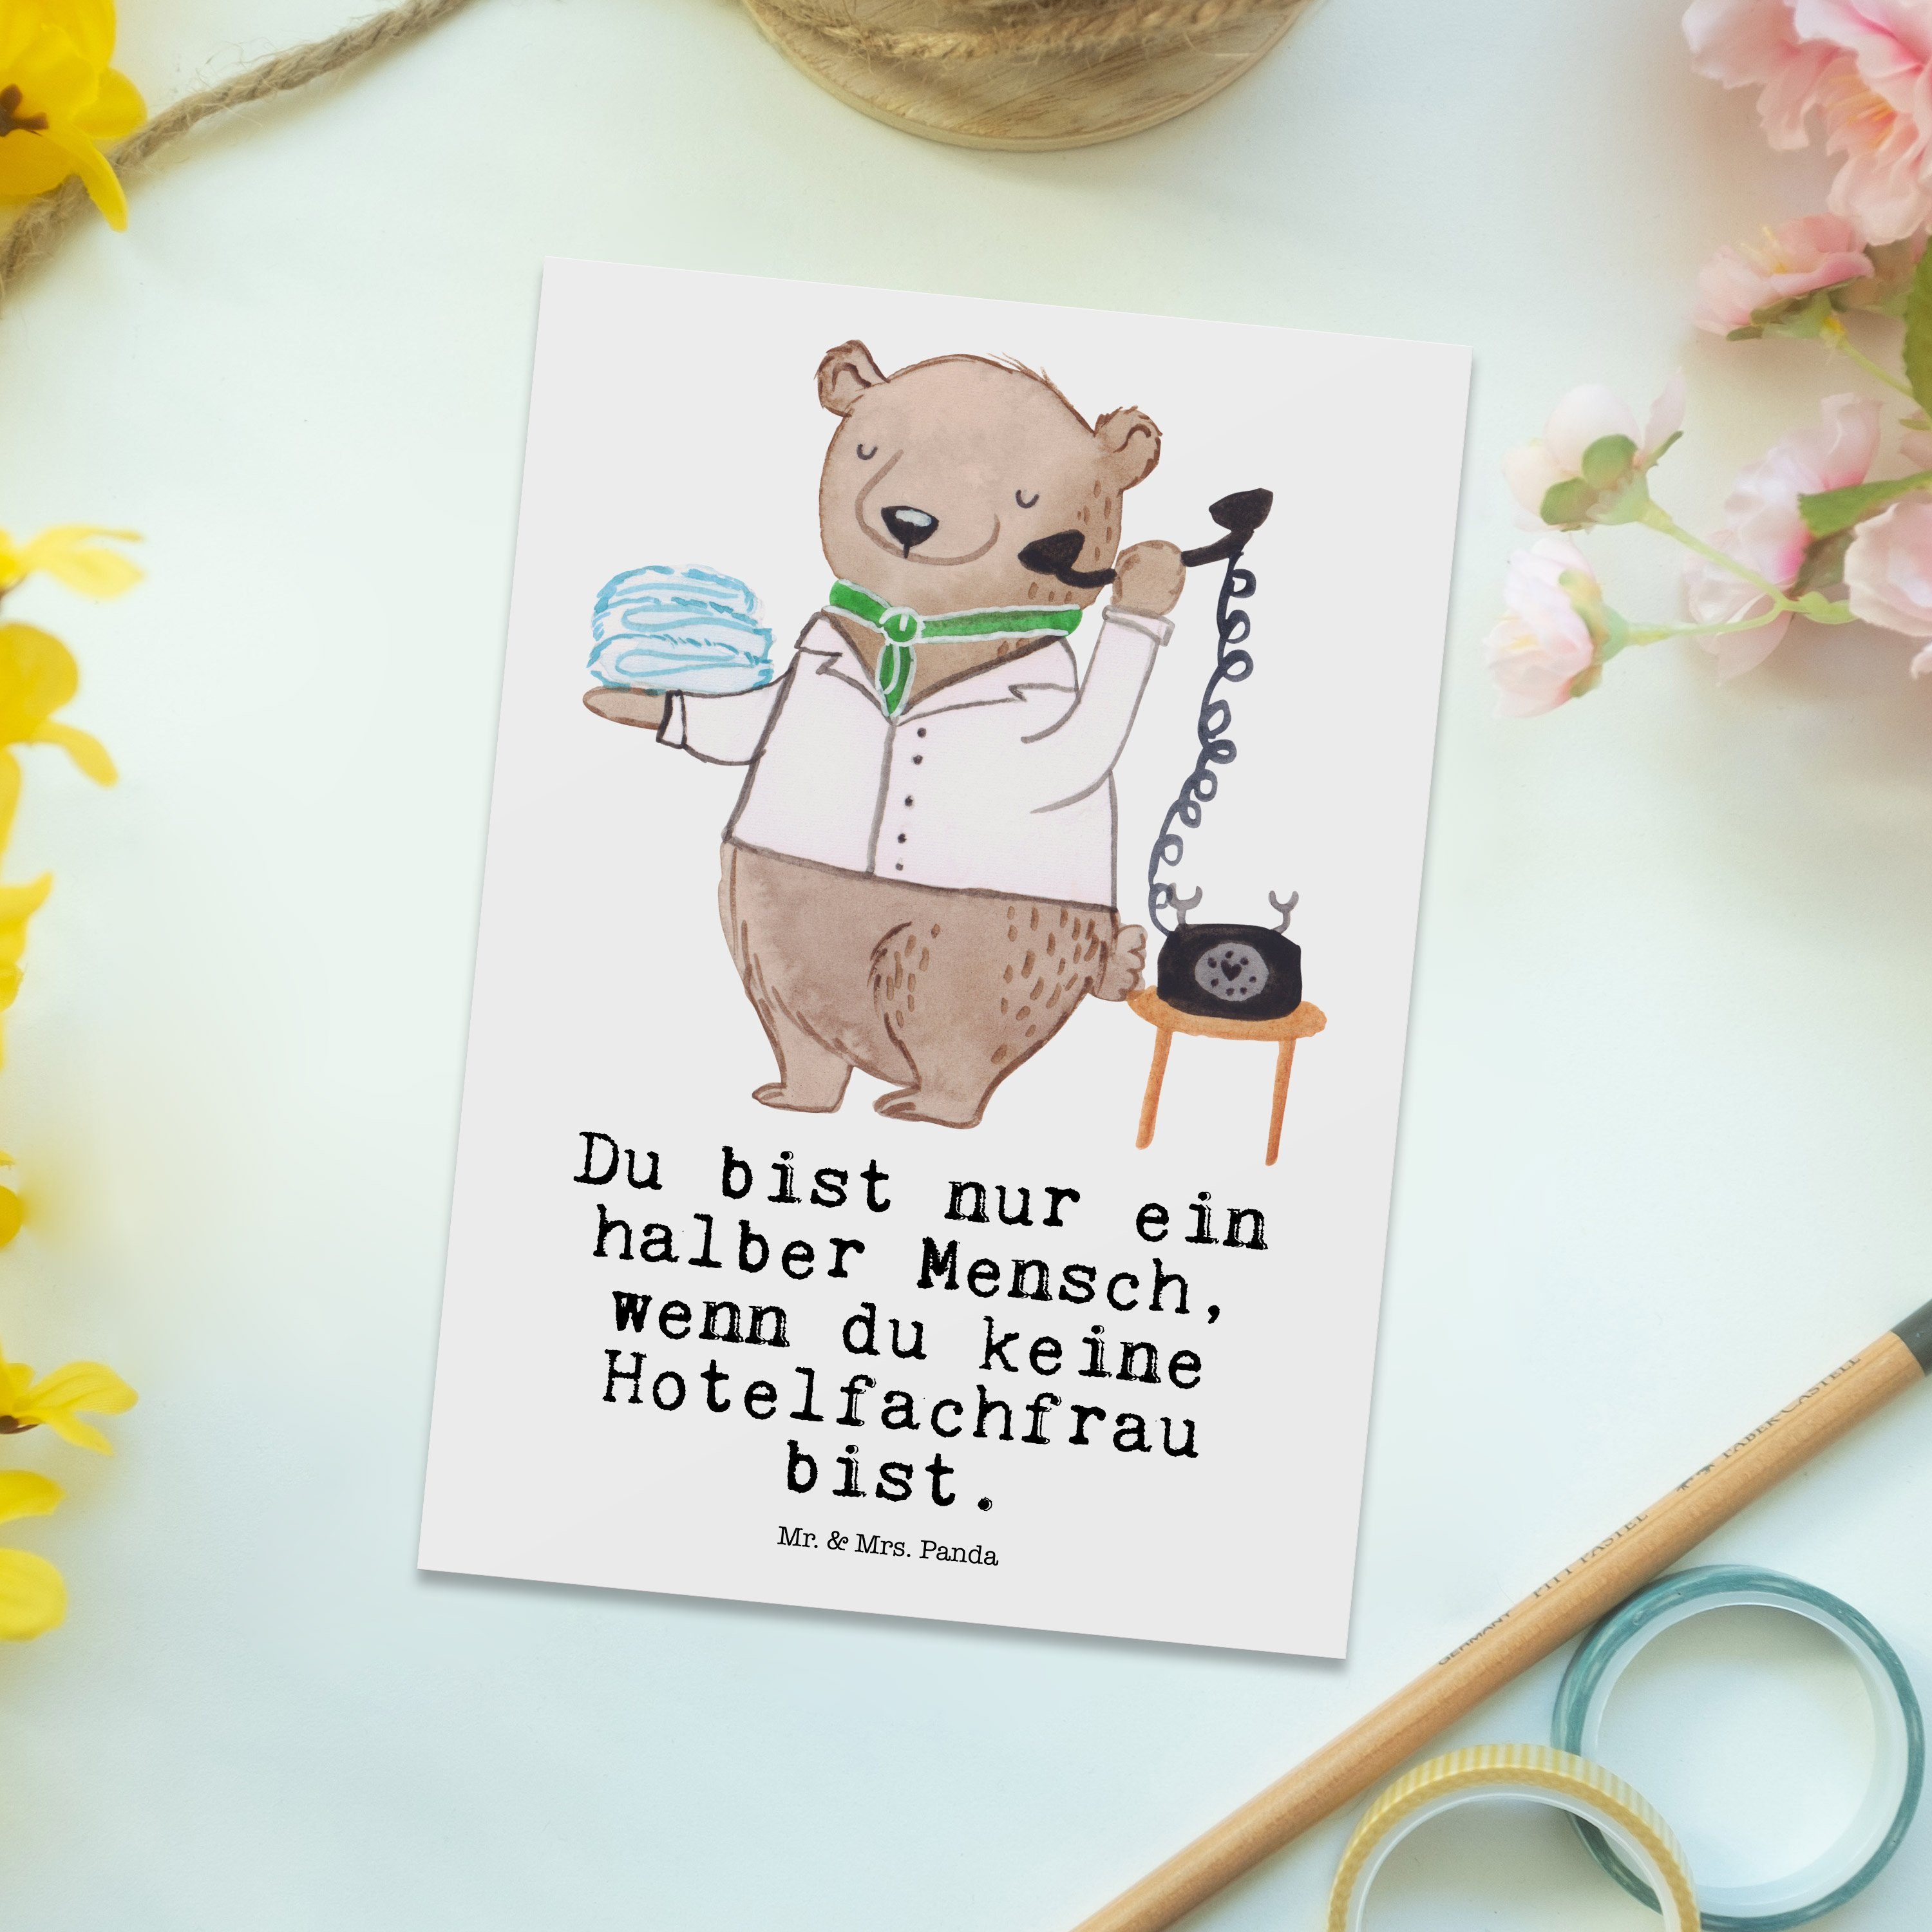 Mr. & Mrs. Hotel Hotelfachfrau Hotelfachangestellte, - Panda Geschenk, mit Weiß - Postkarte Herz